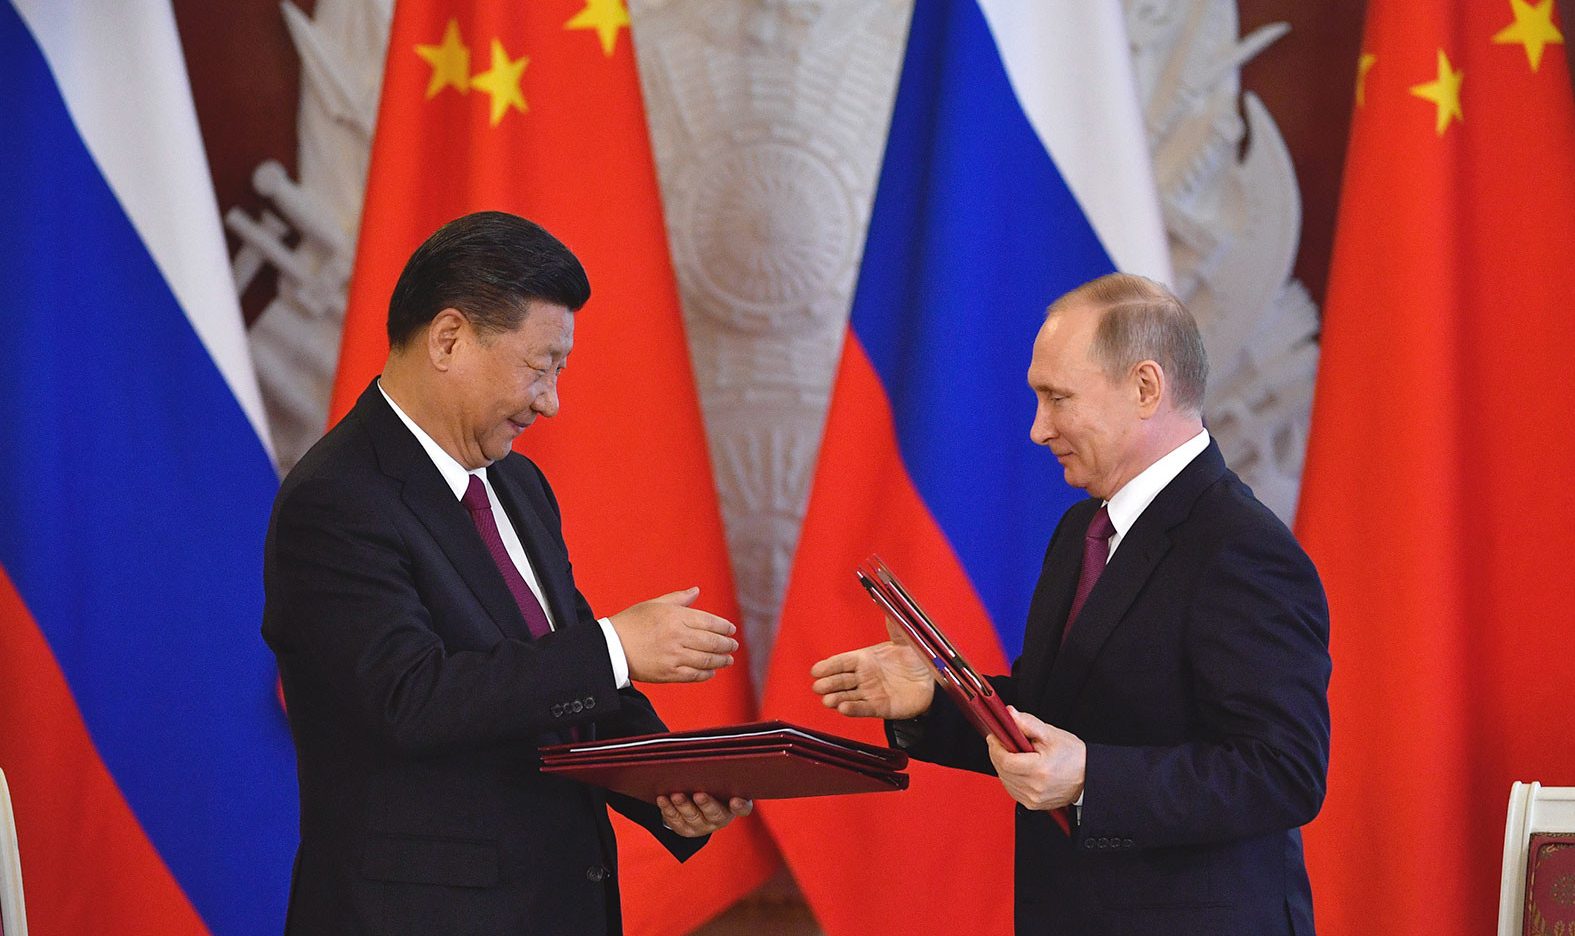 Посольство КНР в России считает провокацией публикацию о «просьбе не нападать на Украину»